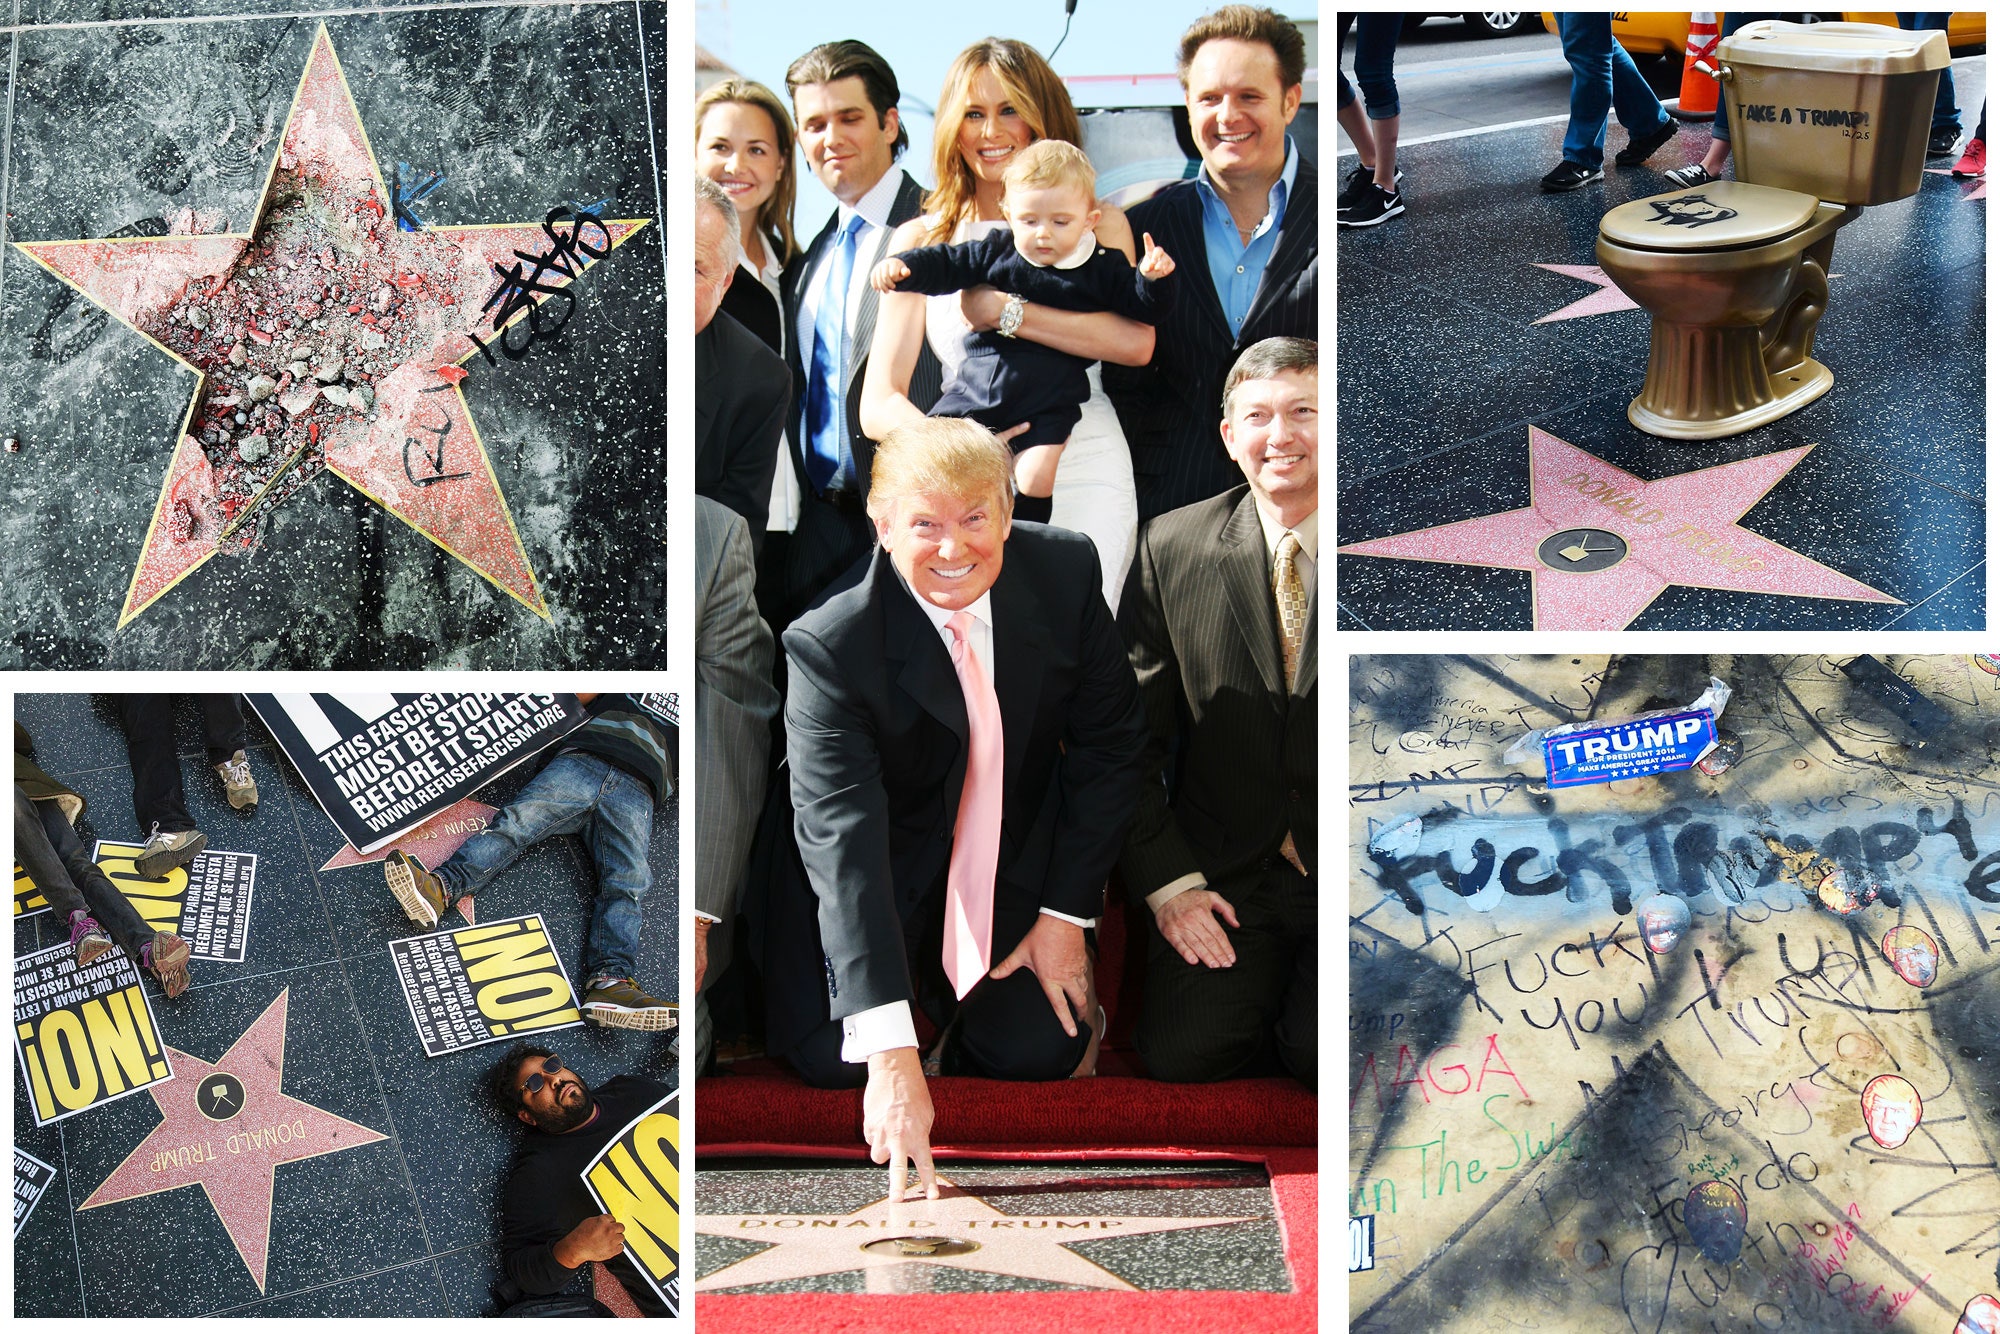 Bintang Milik Donal Trump di Hollywood Walk of Fame Dirusak Lagi Oleh Pria Berkostum Hulk